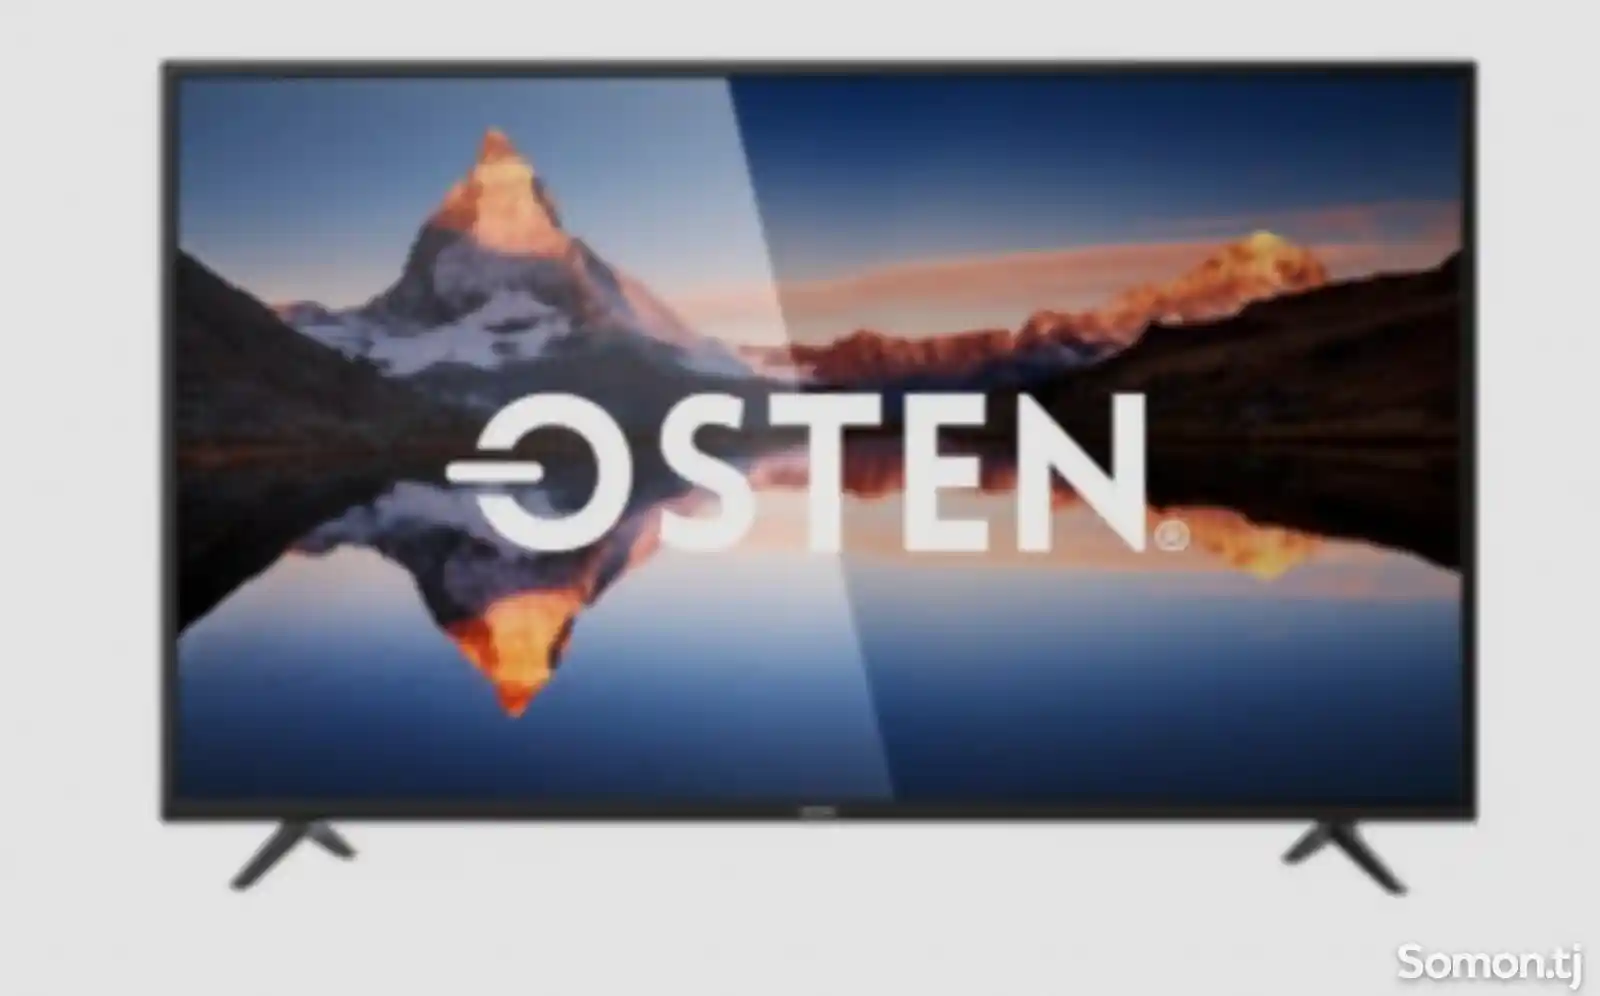 Телевизор Osten-2